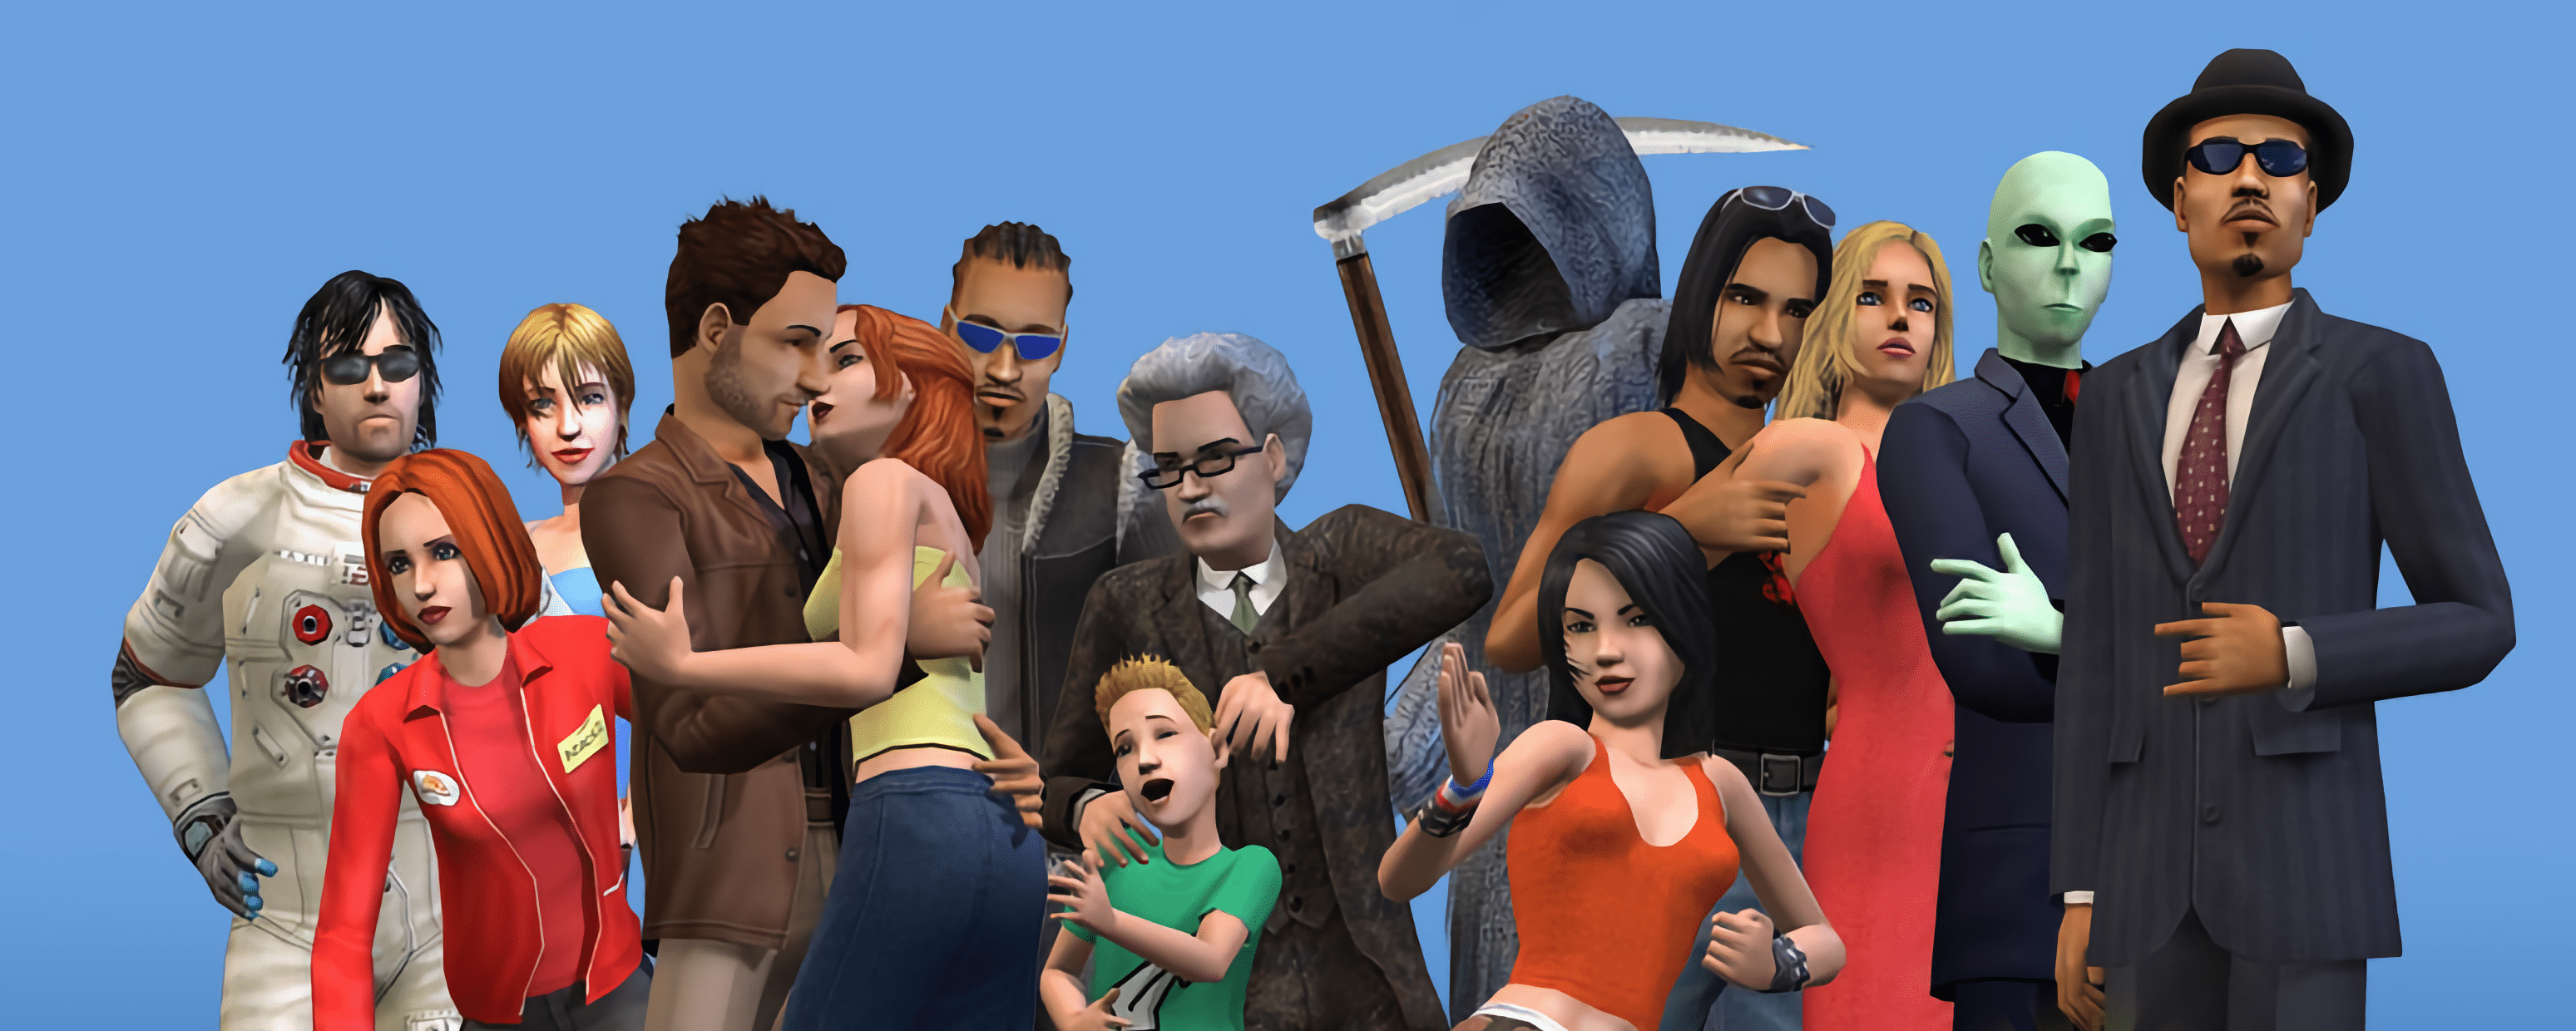 Rétrospective de la saga "Les Sims" : Jouer avec la vie